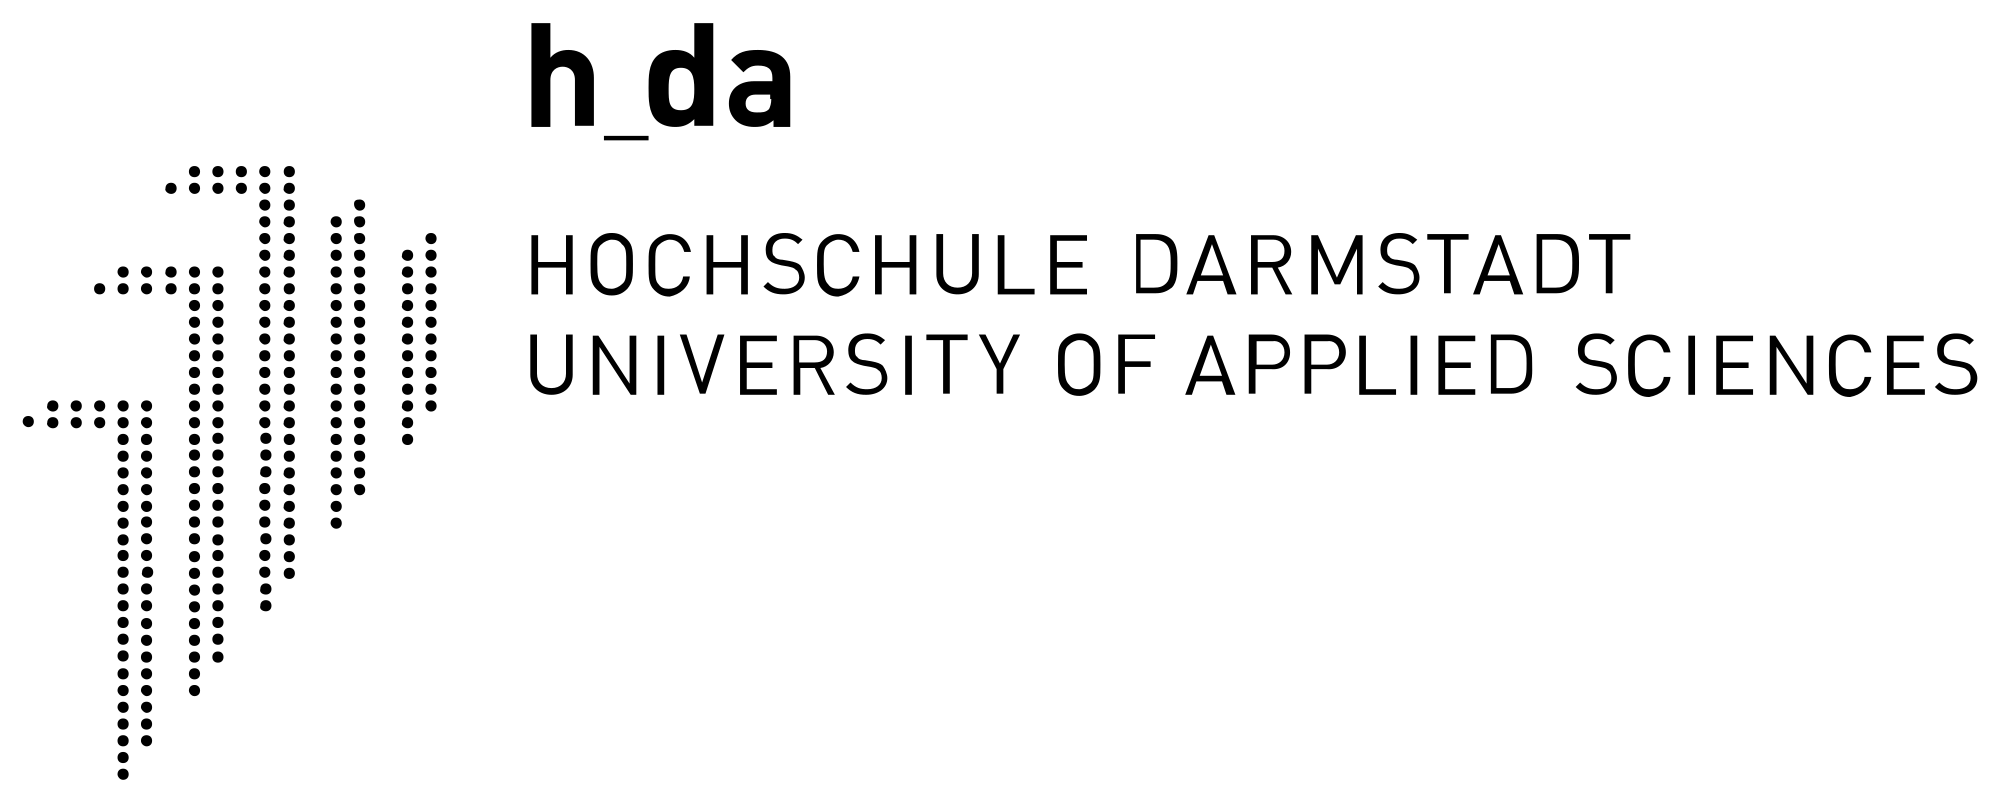 2000px-Hda_logo.svg (002)